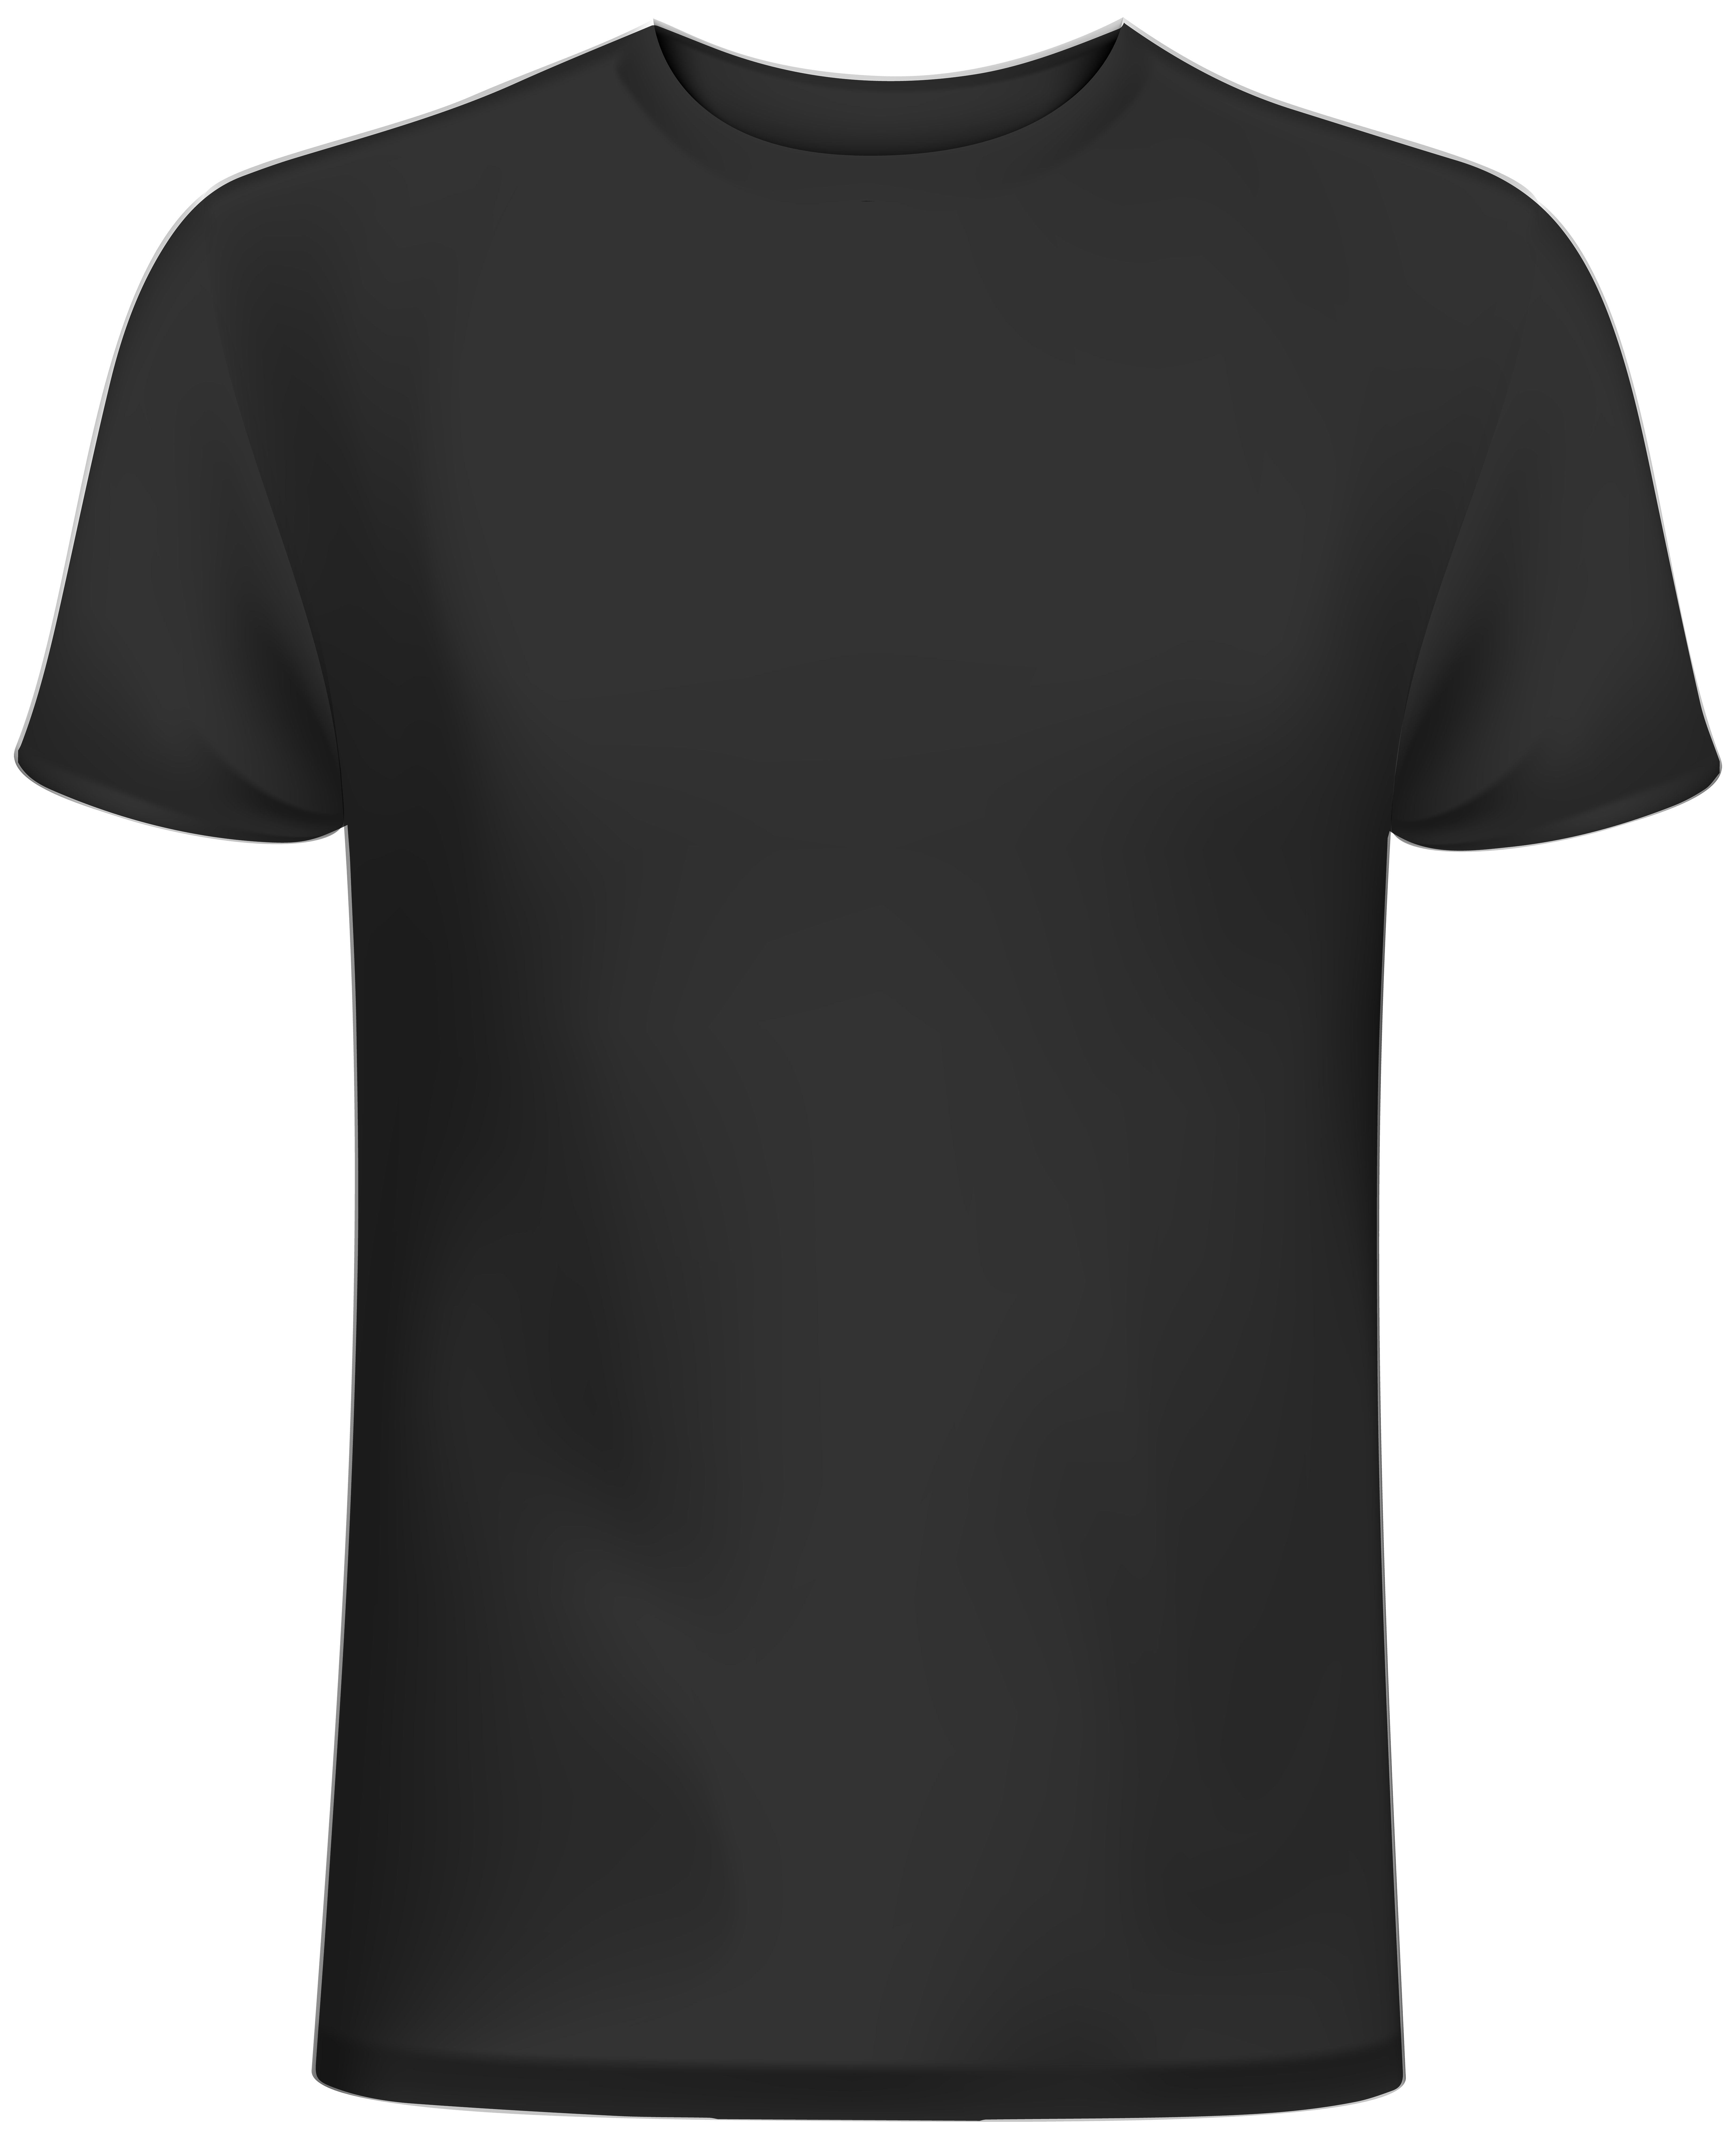 Blue T Shirt PNG Clipart - Best WEB Clipart